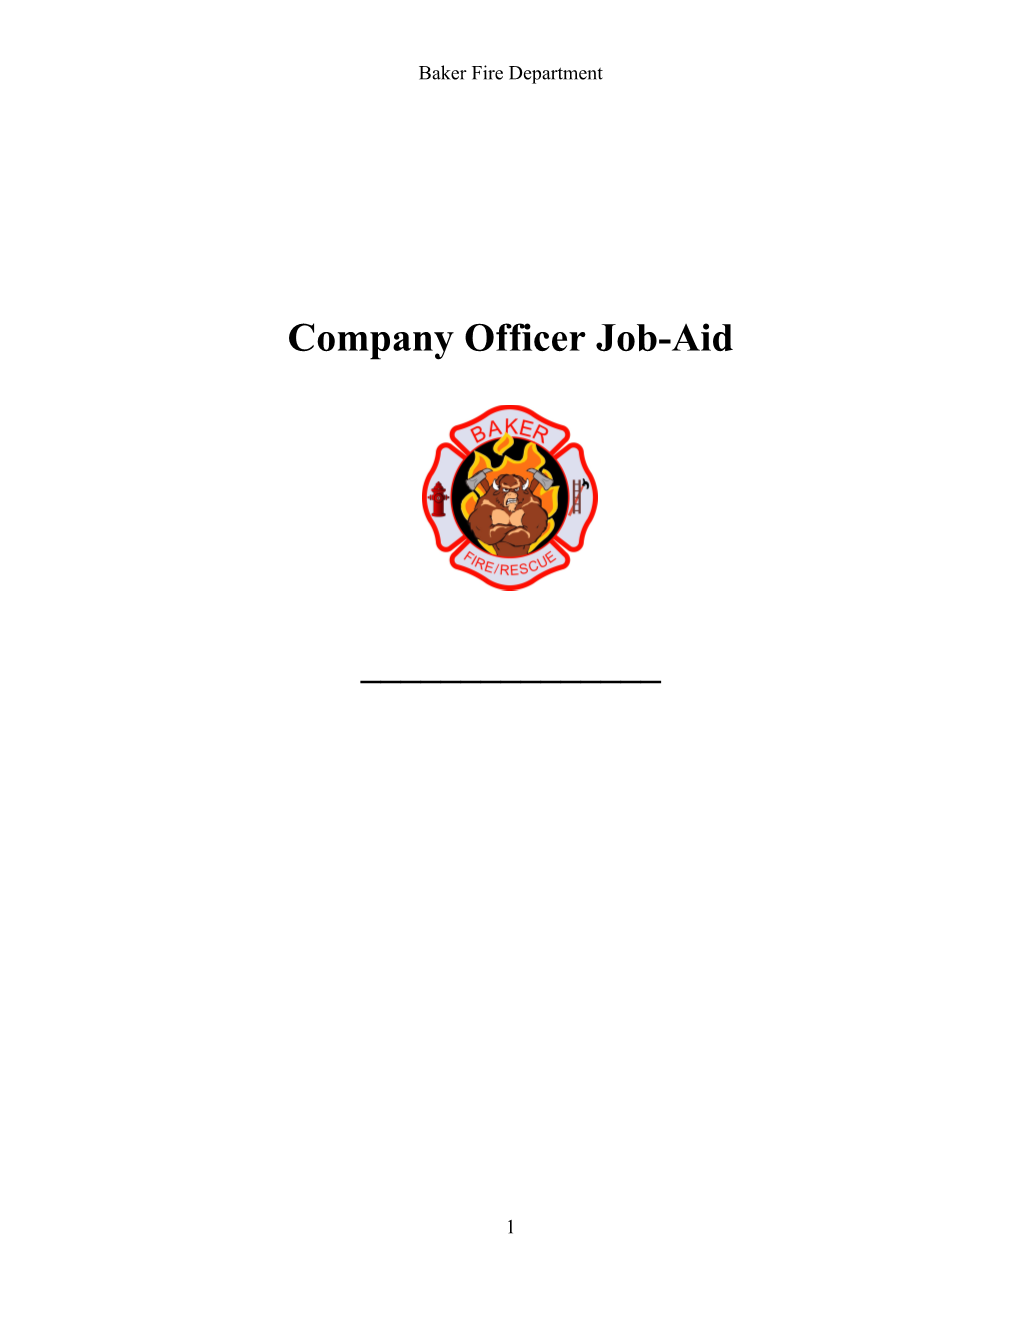 Company Officer Job-Aid